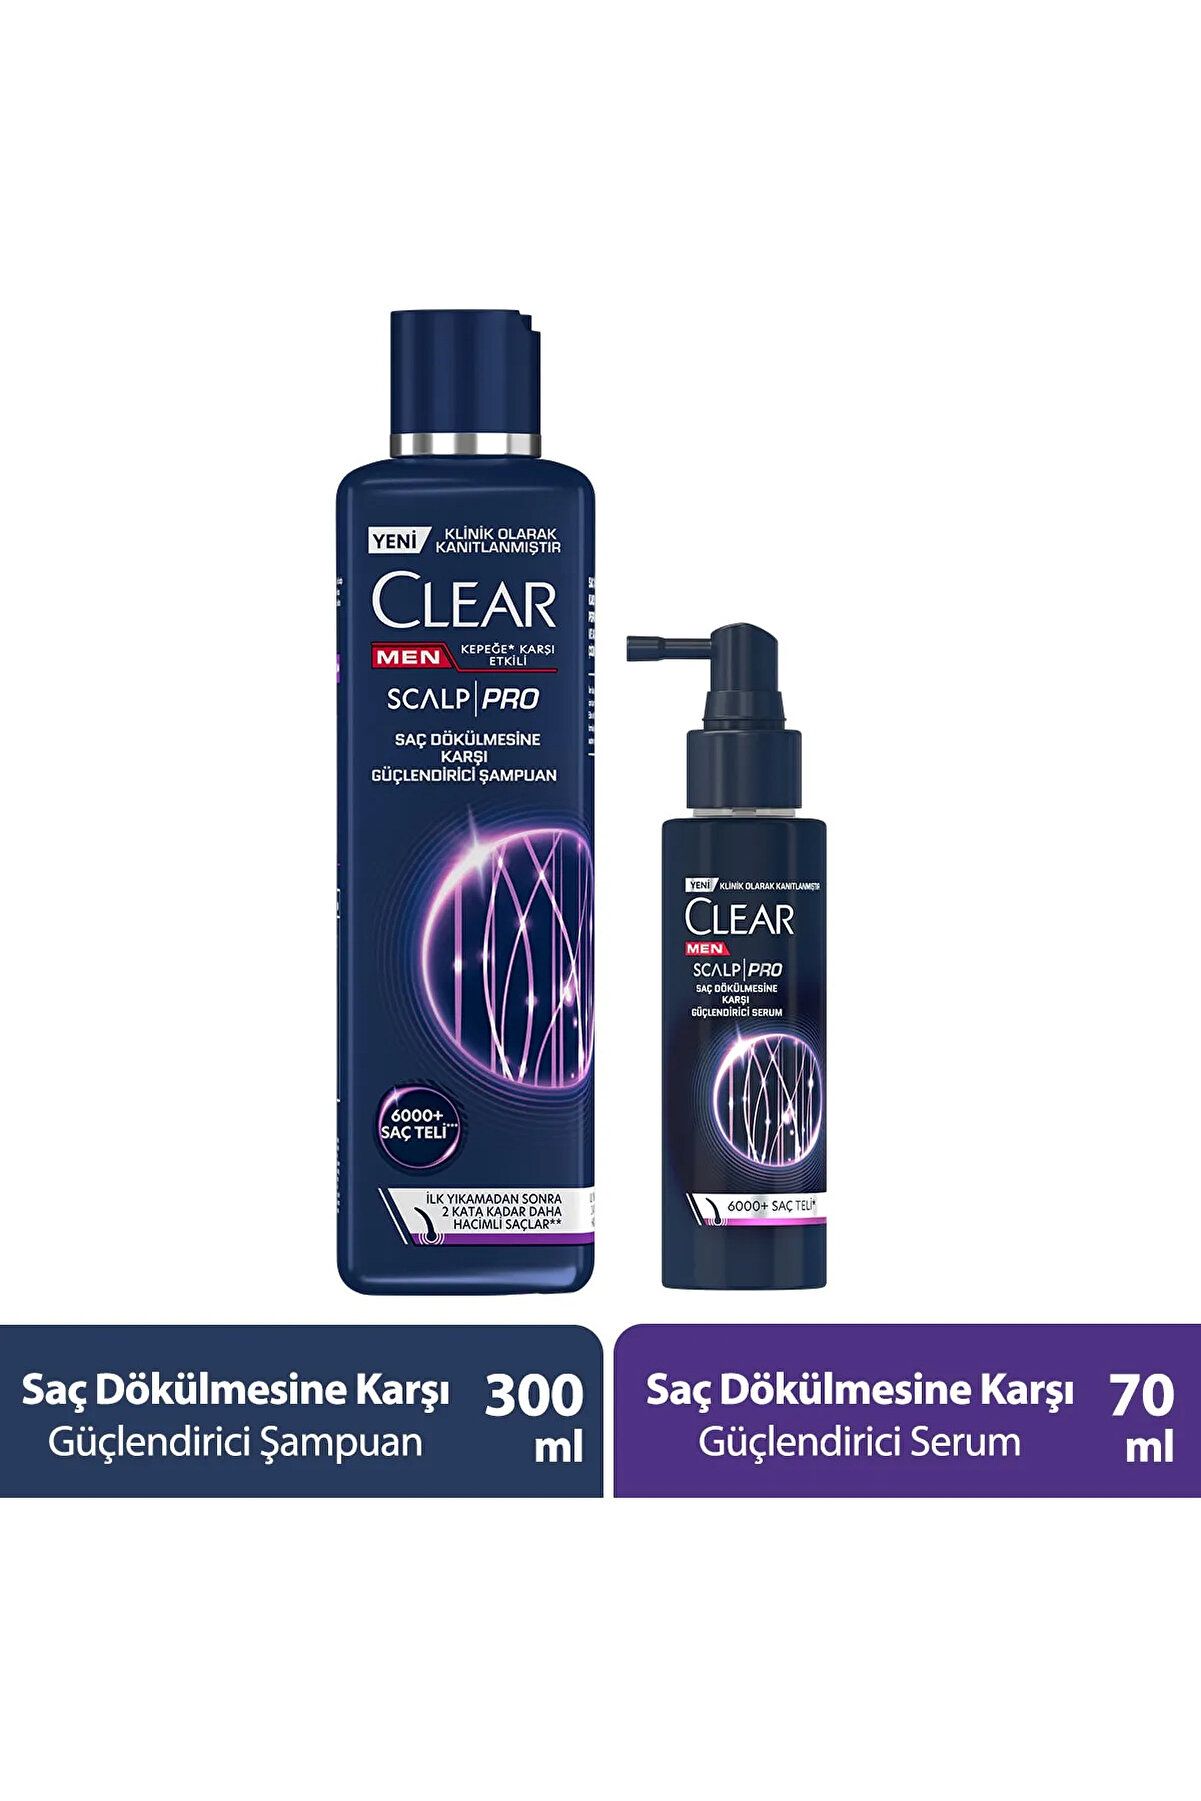 Clear Men Scalp Pro Güçlendirici Şampuan Saç Dökülmesine Kepeğe Karşı Etkili 300 ml Serum 70 ml